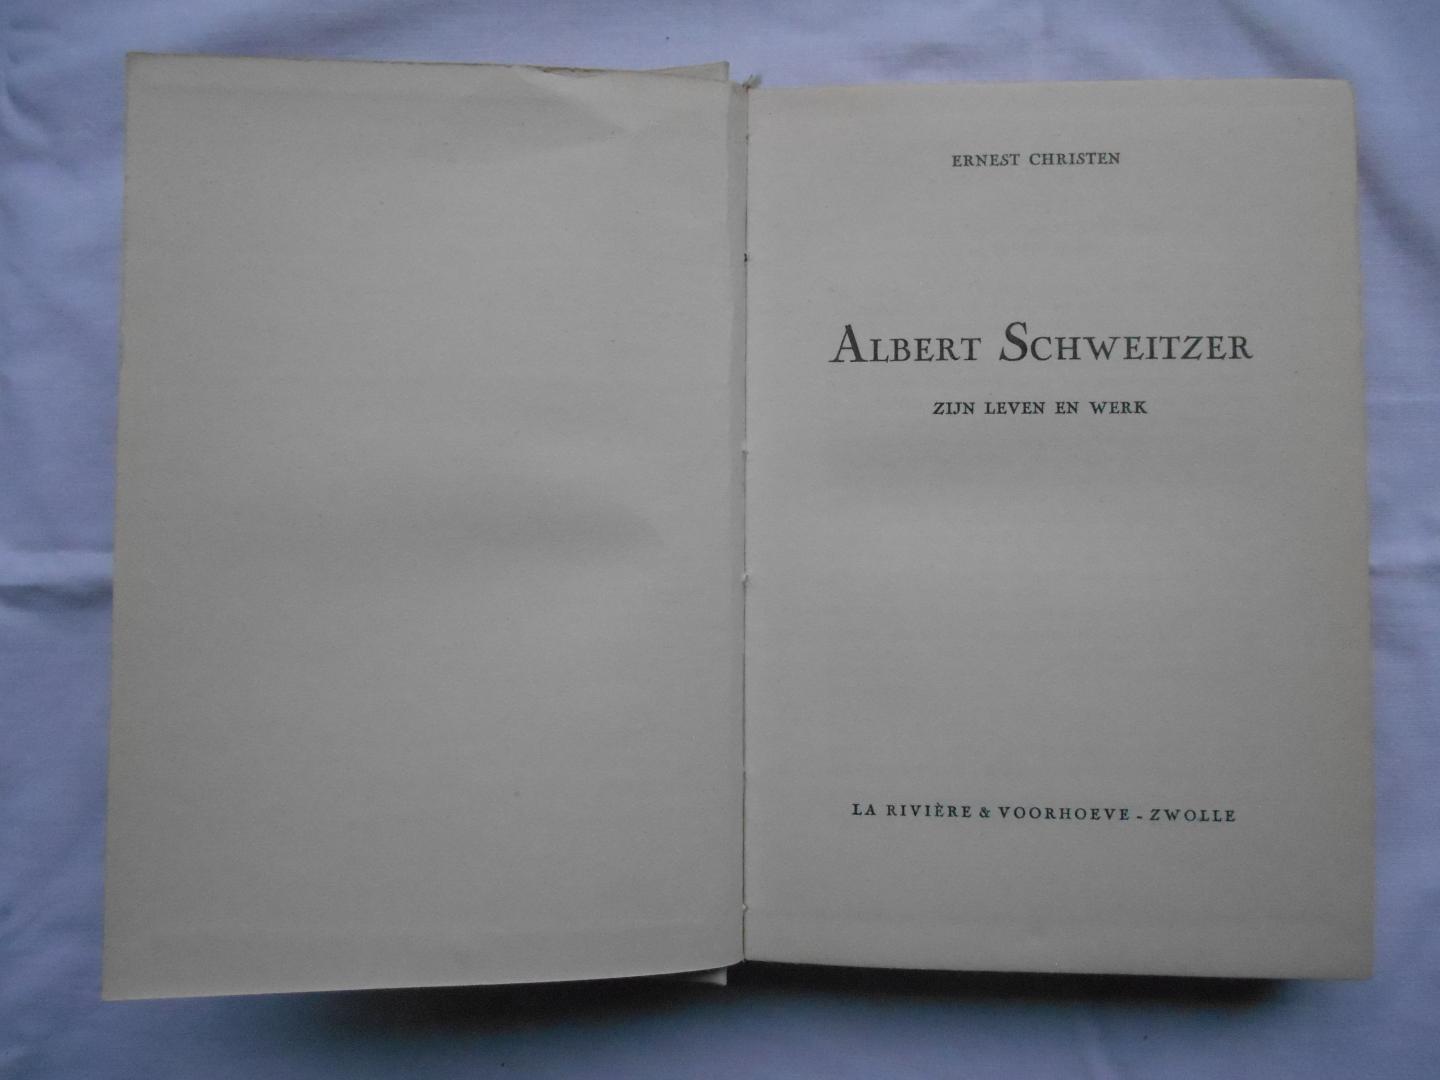 Christen, Ernest - Albert Schweitzer - zijn leven en werk